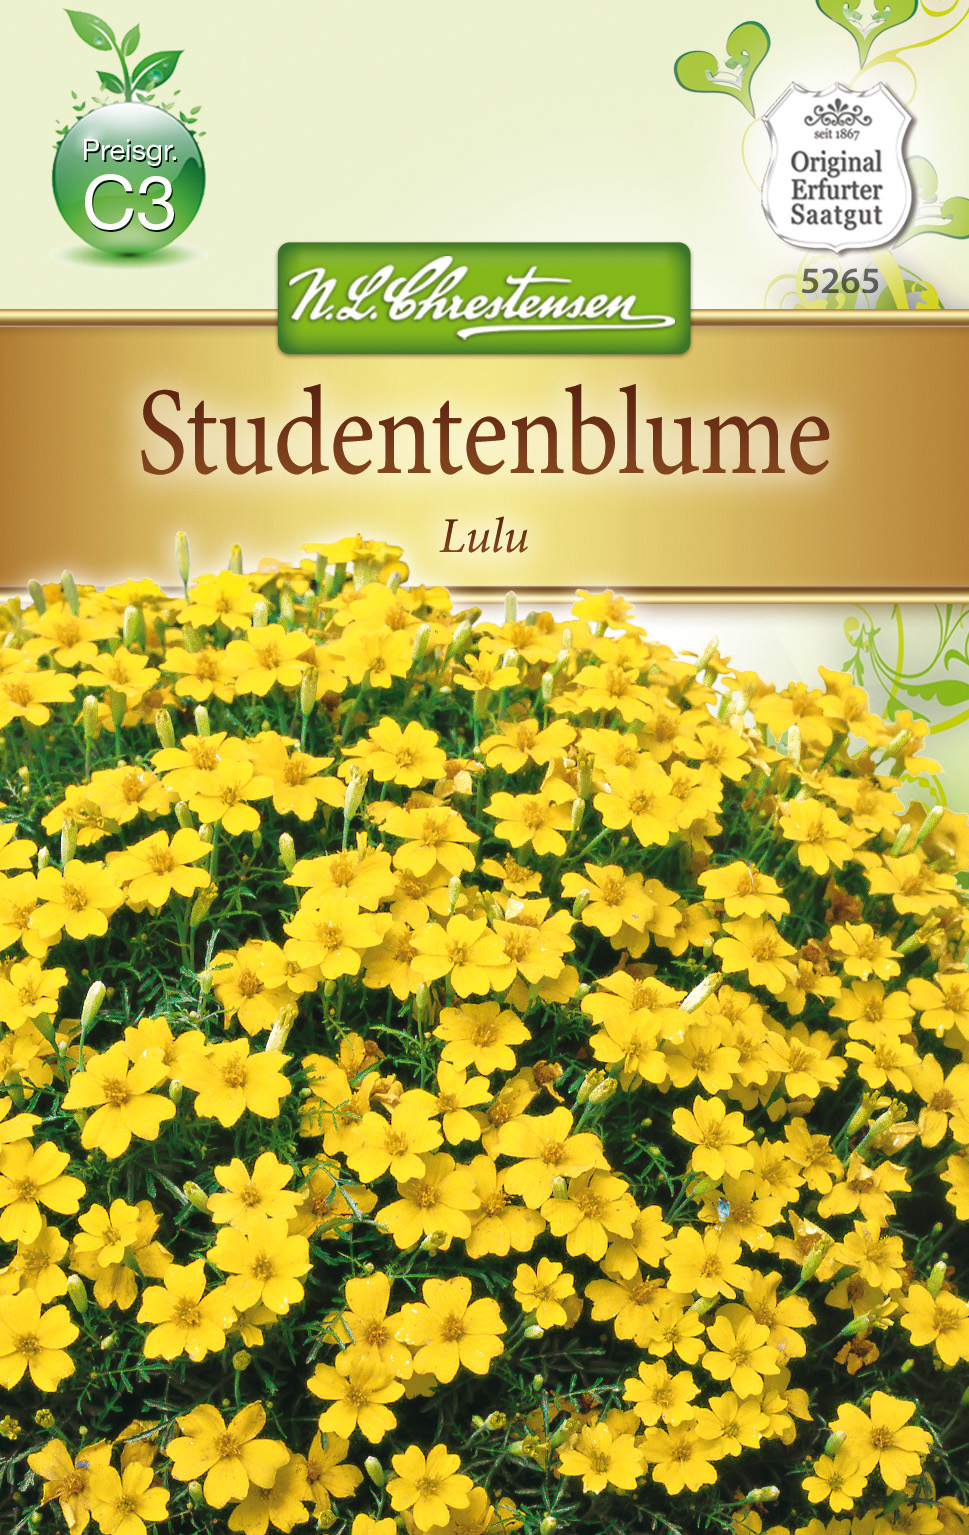 Tagetes tenuifolia Studentenblume - Lulu, kleinblütig, hellgelb